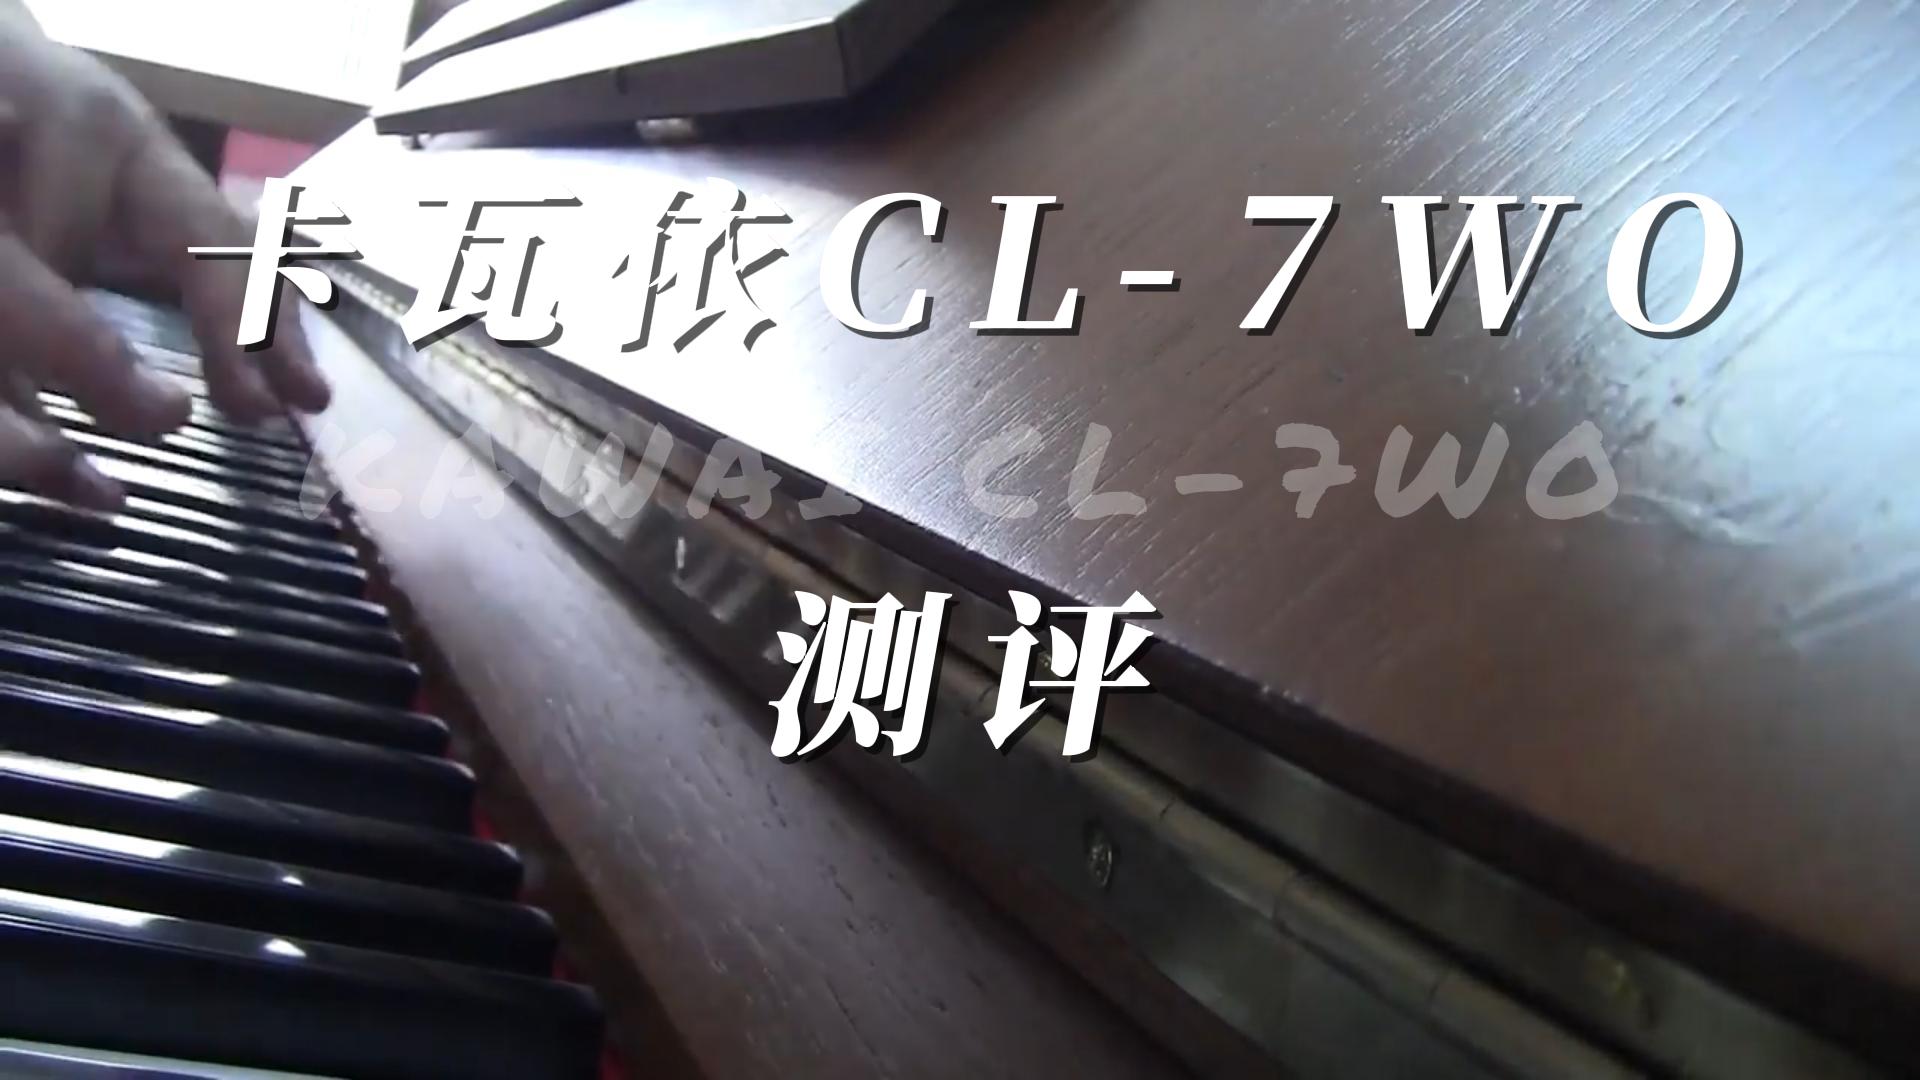 KAWAI 卡瓦依CL-7WO立式钢琴测评-柏通琴行整理